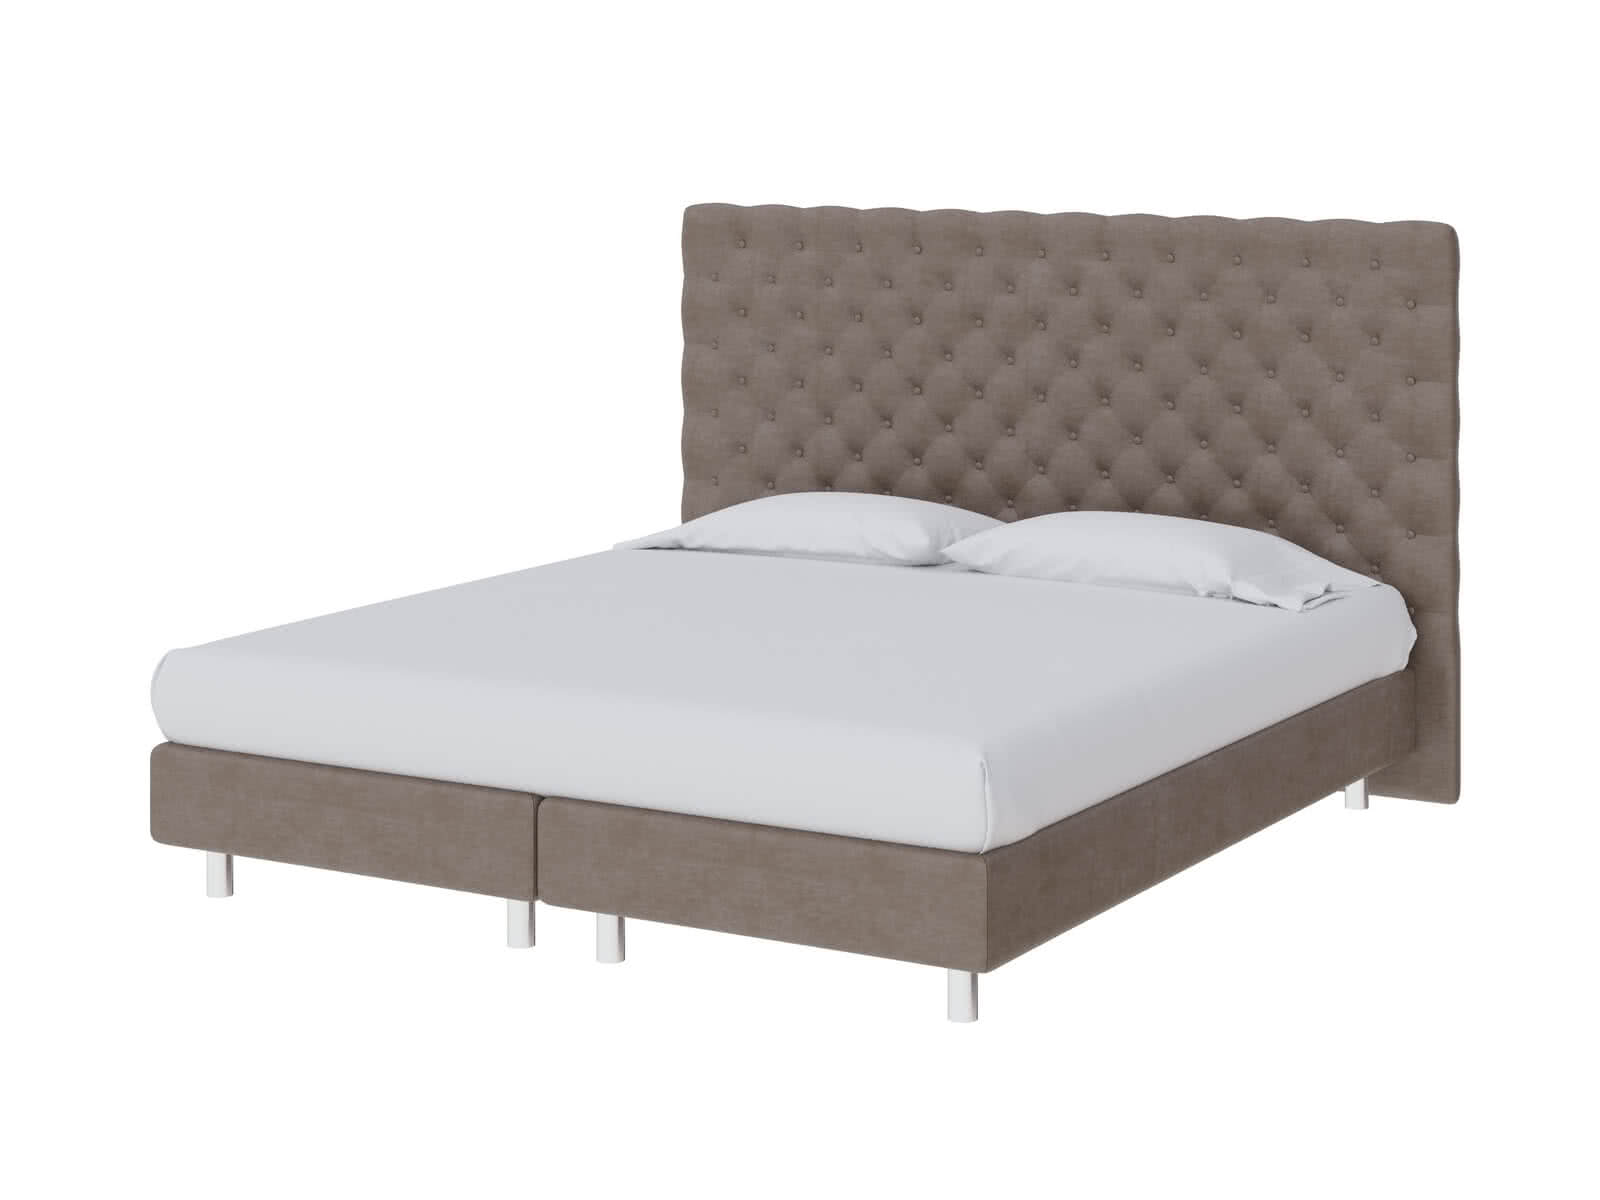 Купить кровать ProSon Кровать ProSon Europe Paris Lift, Лофти Лён 120 х 200 см Лофти Лён дешево на официальном сайте